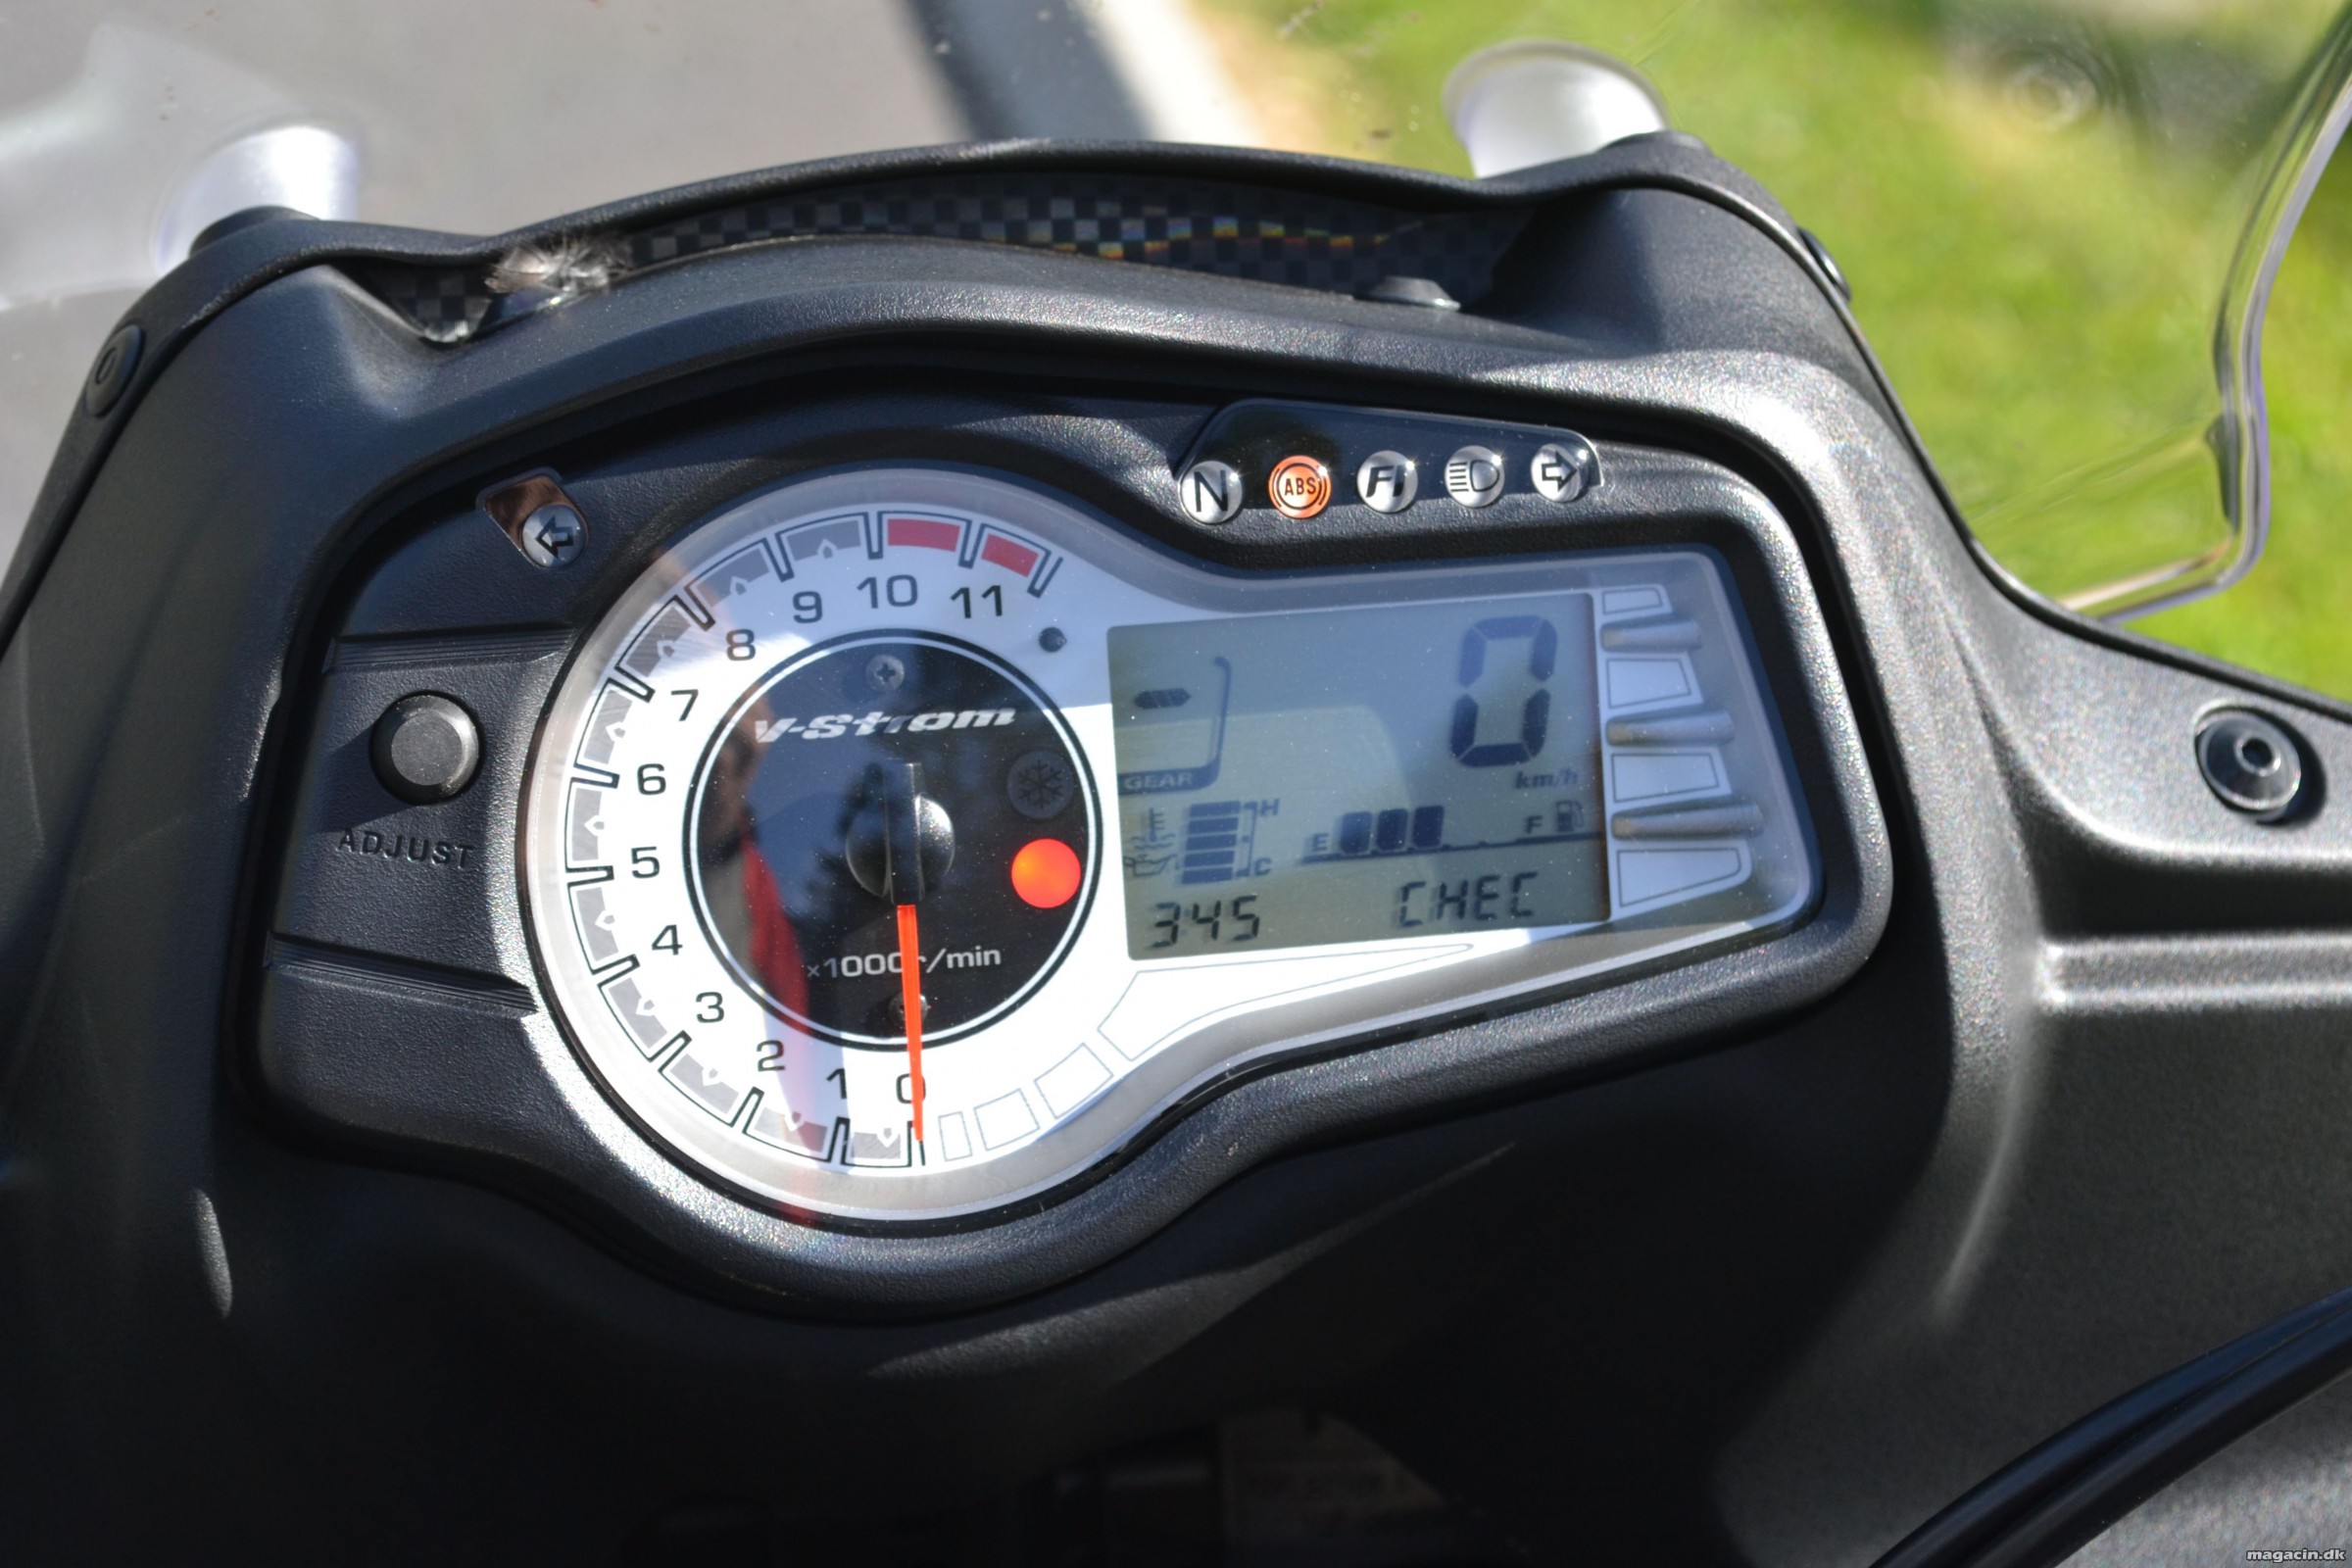 Test: 2015 Kawasaki Versys 650 vs Suzuki DL 650 V Strom – Eventyr for begyndere